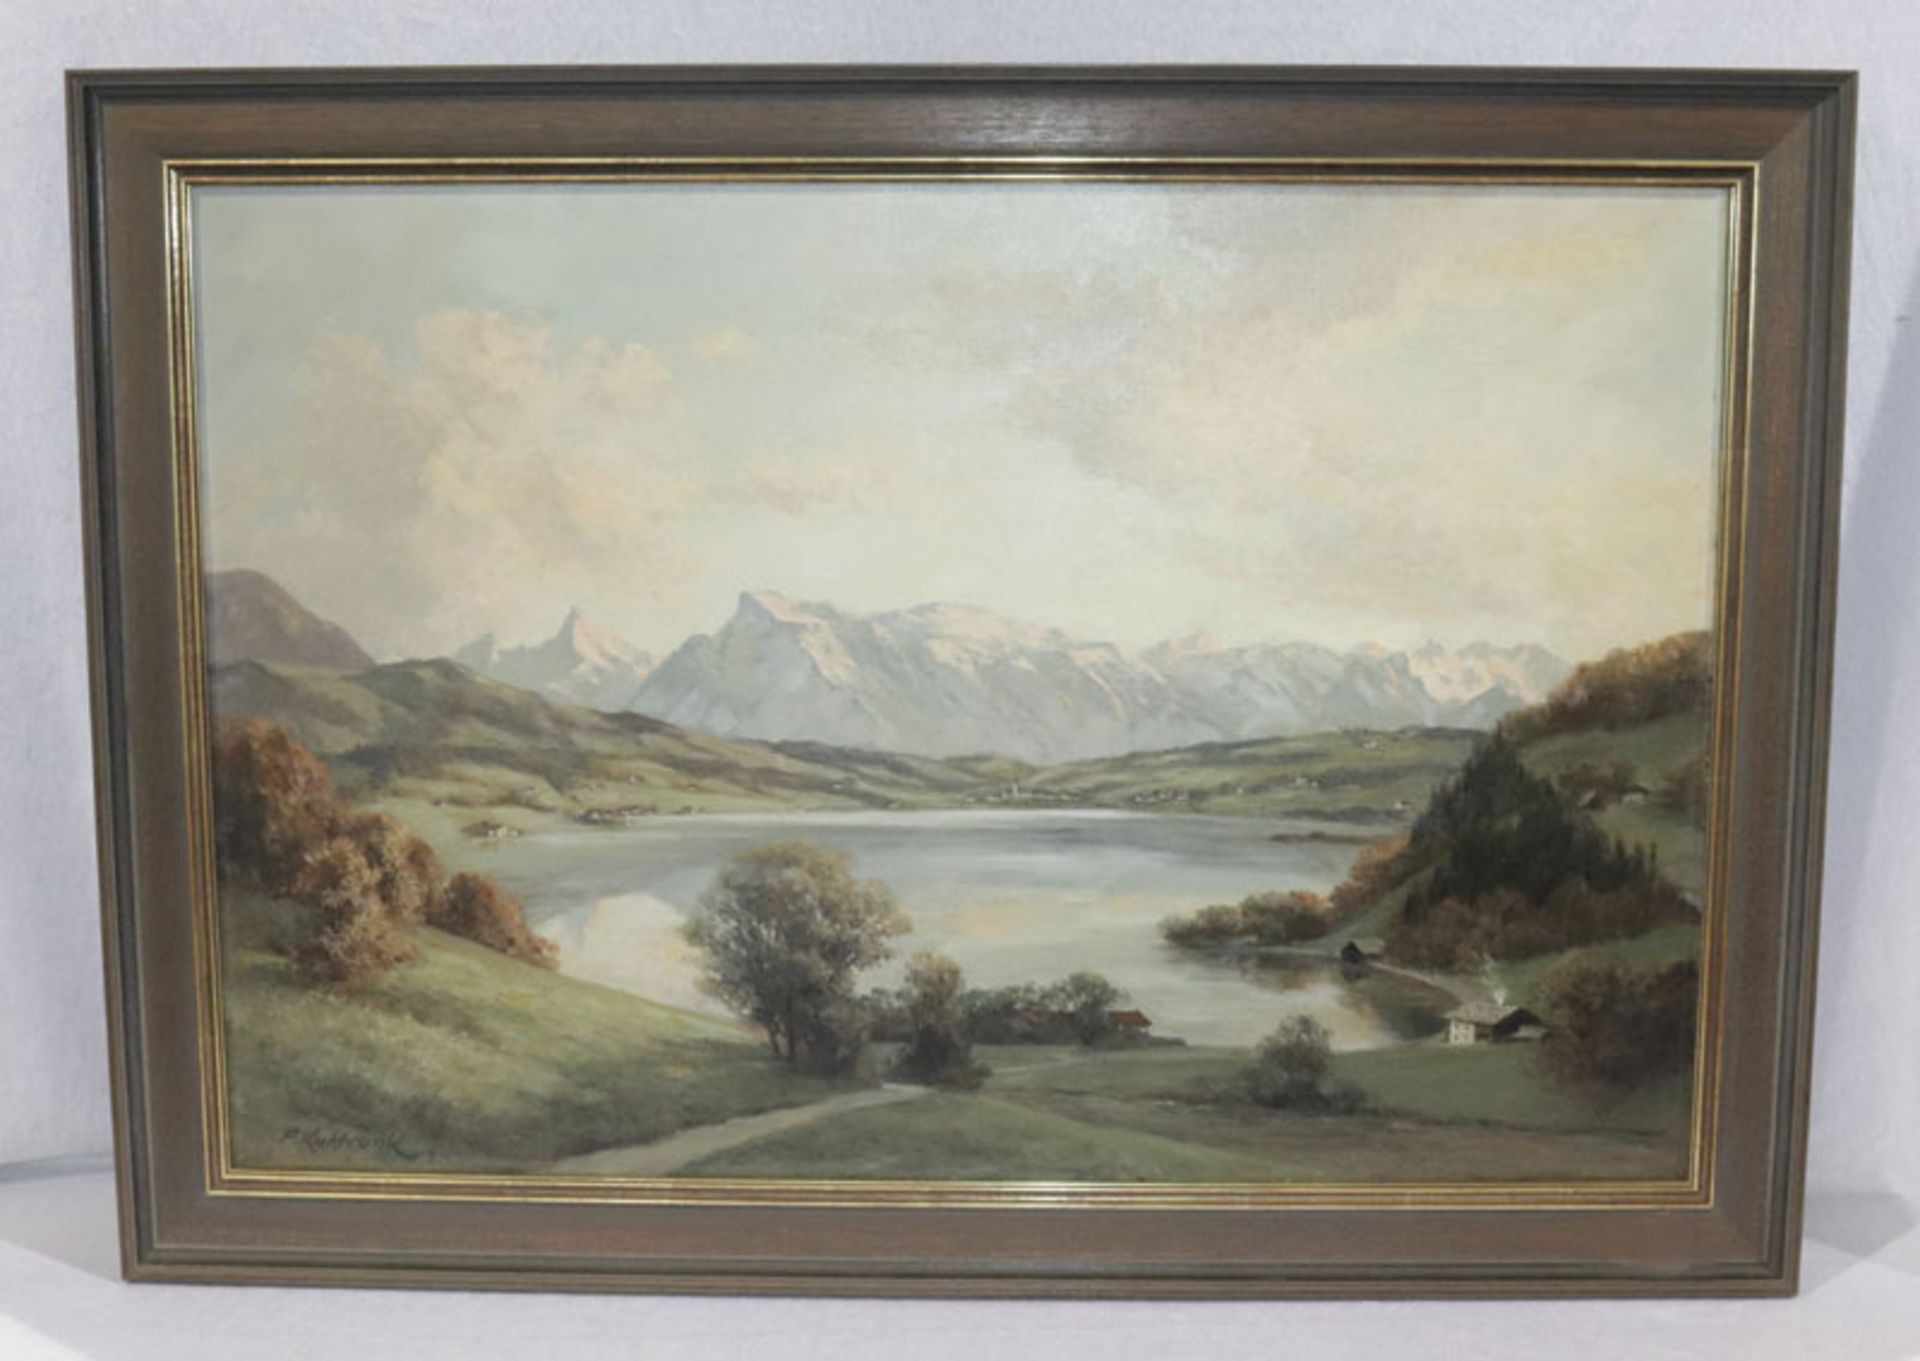 Gemälde ÖL/LW 'Salzburger Landschafts-Szenerie', signiert F. Kulstrunk, Franz Kulstrunk, * 1861 Rads